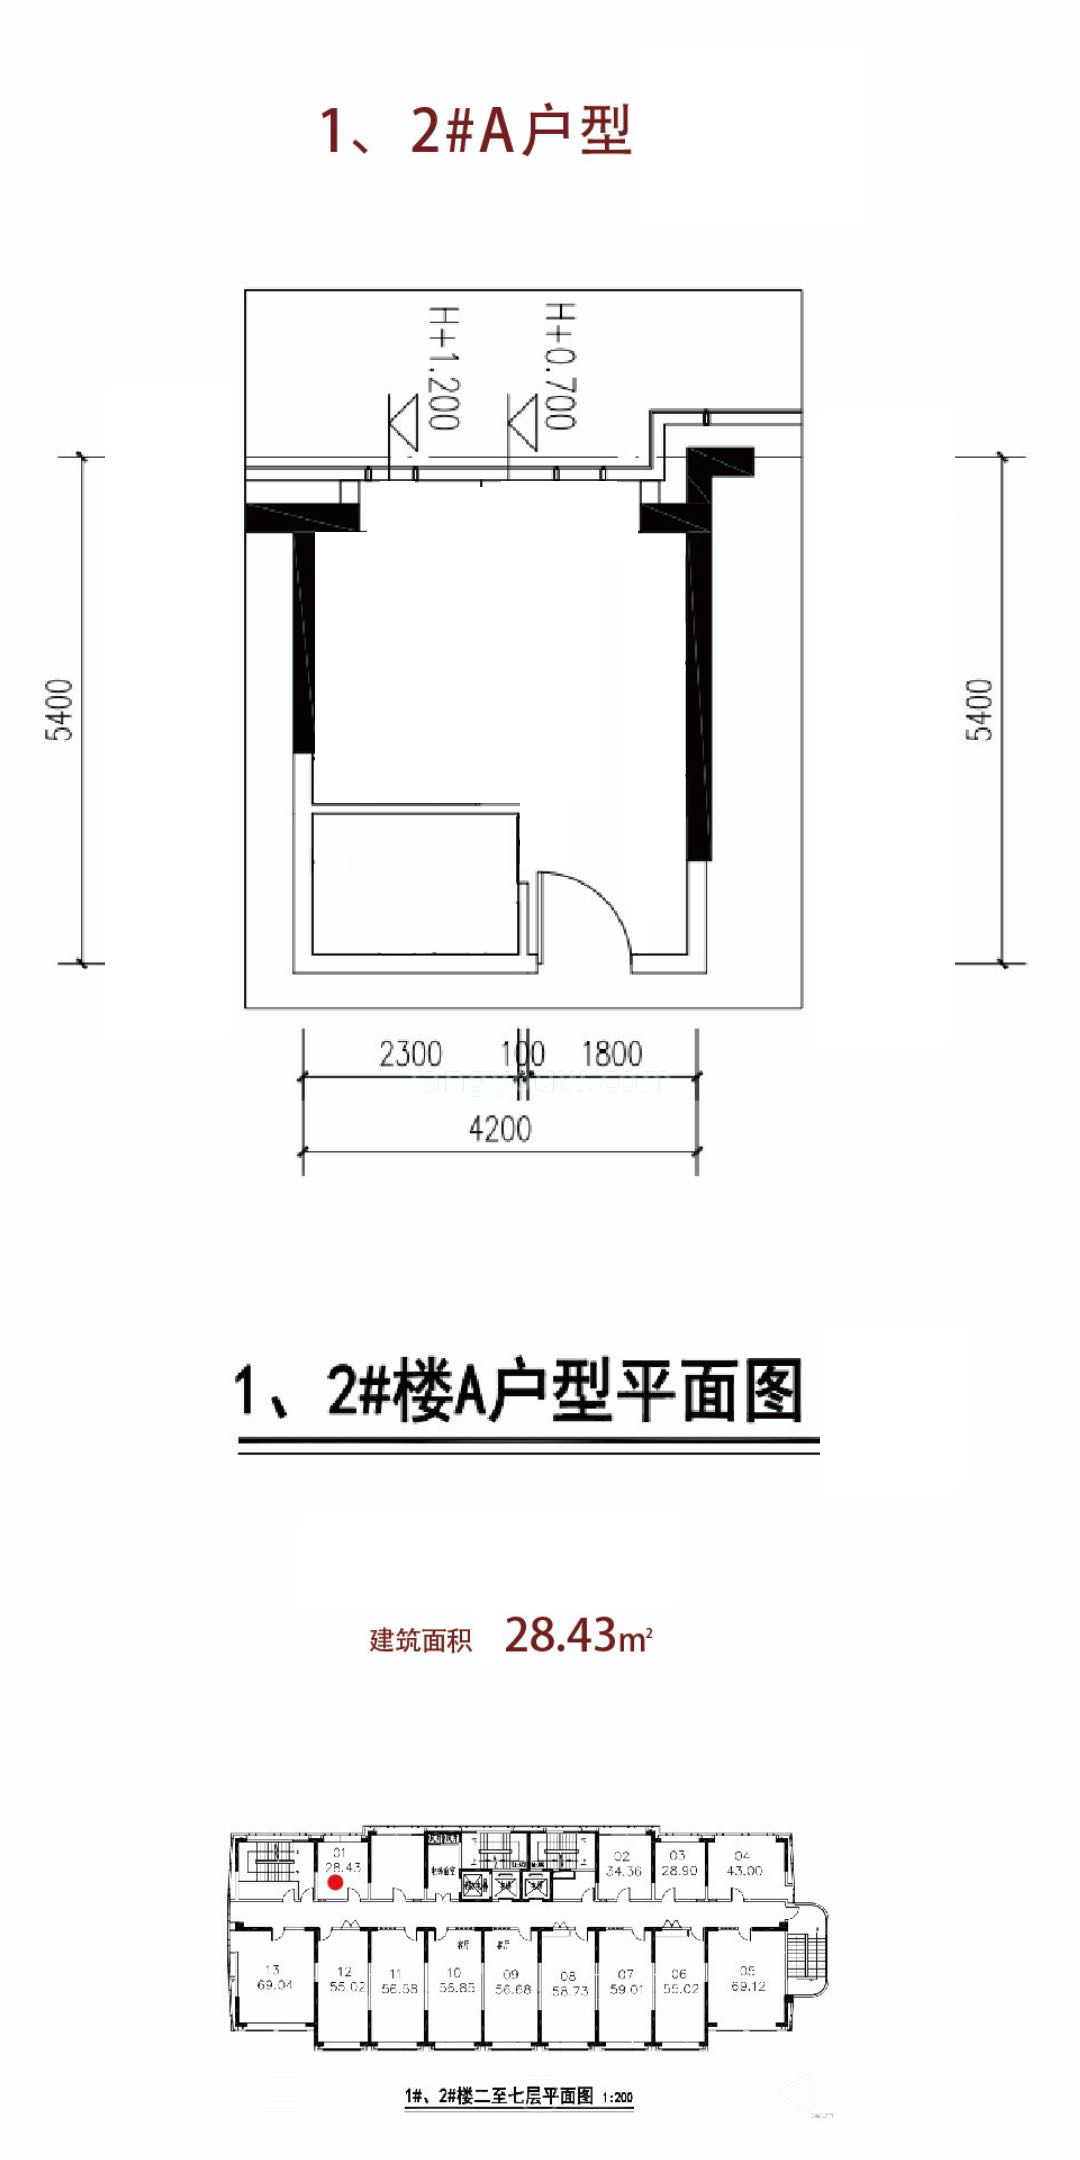 广电航天海晟 商业办公 1、2#A户型 建筑面积28.43㎡